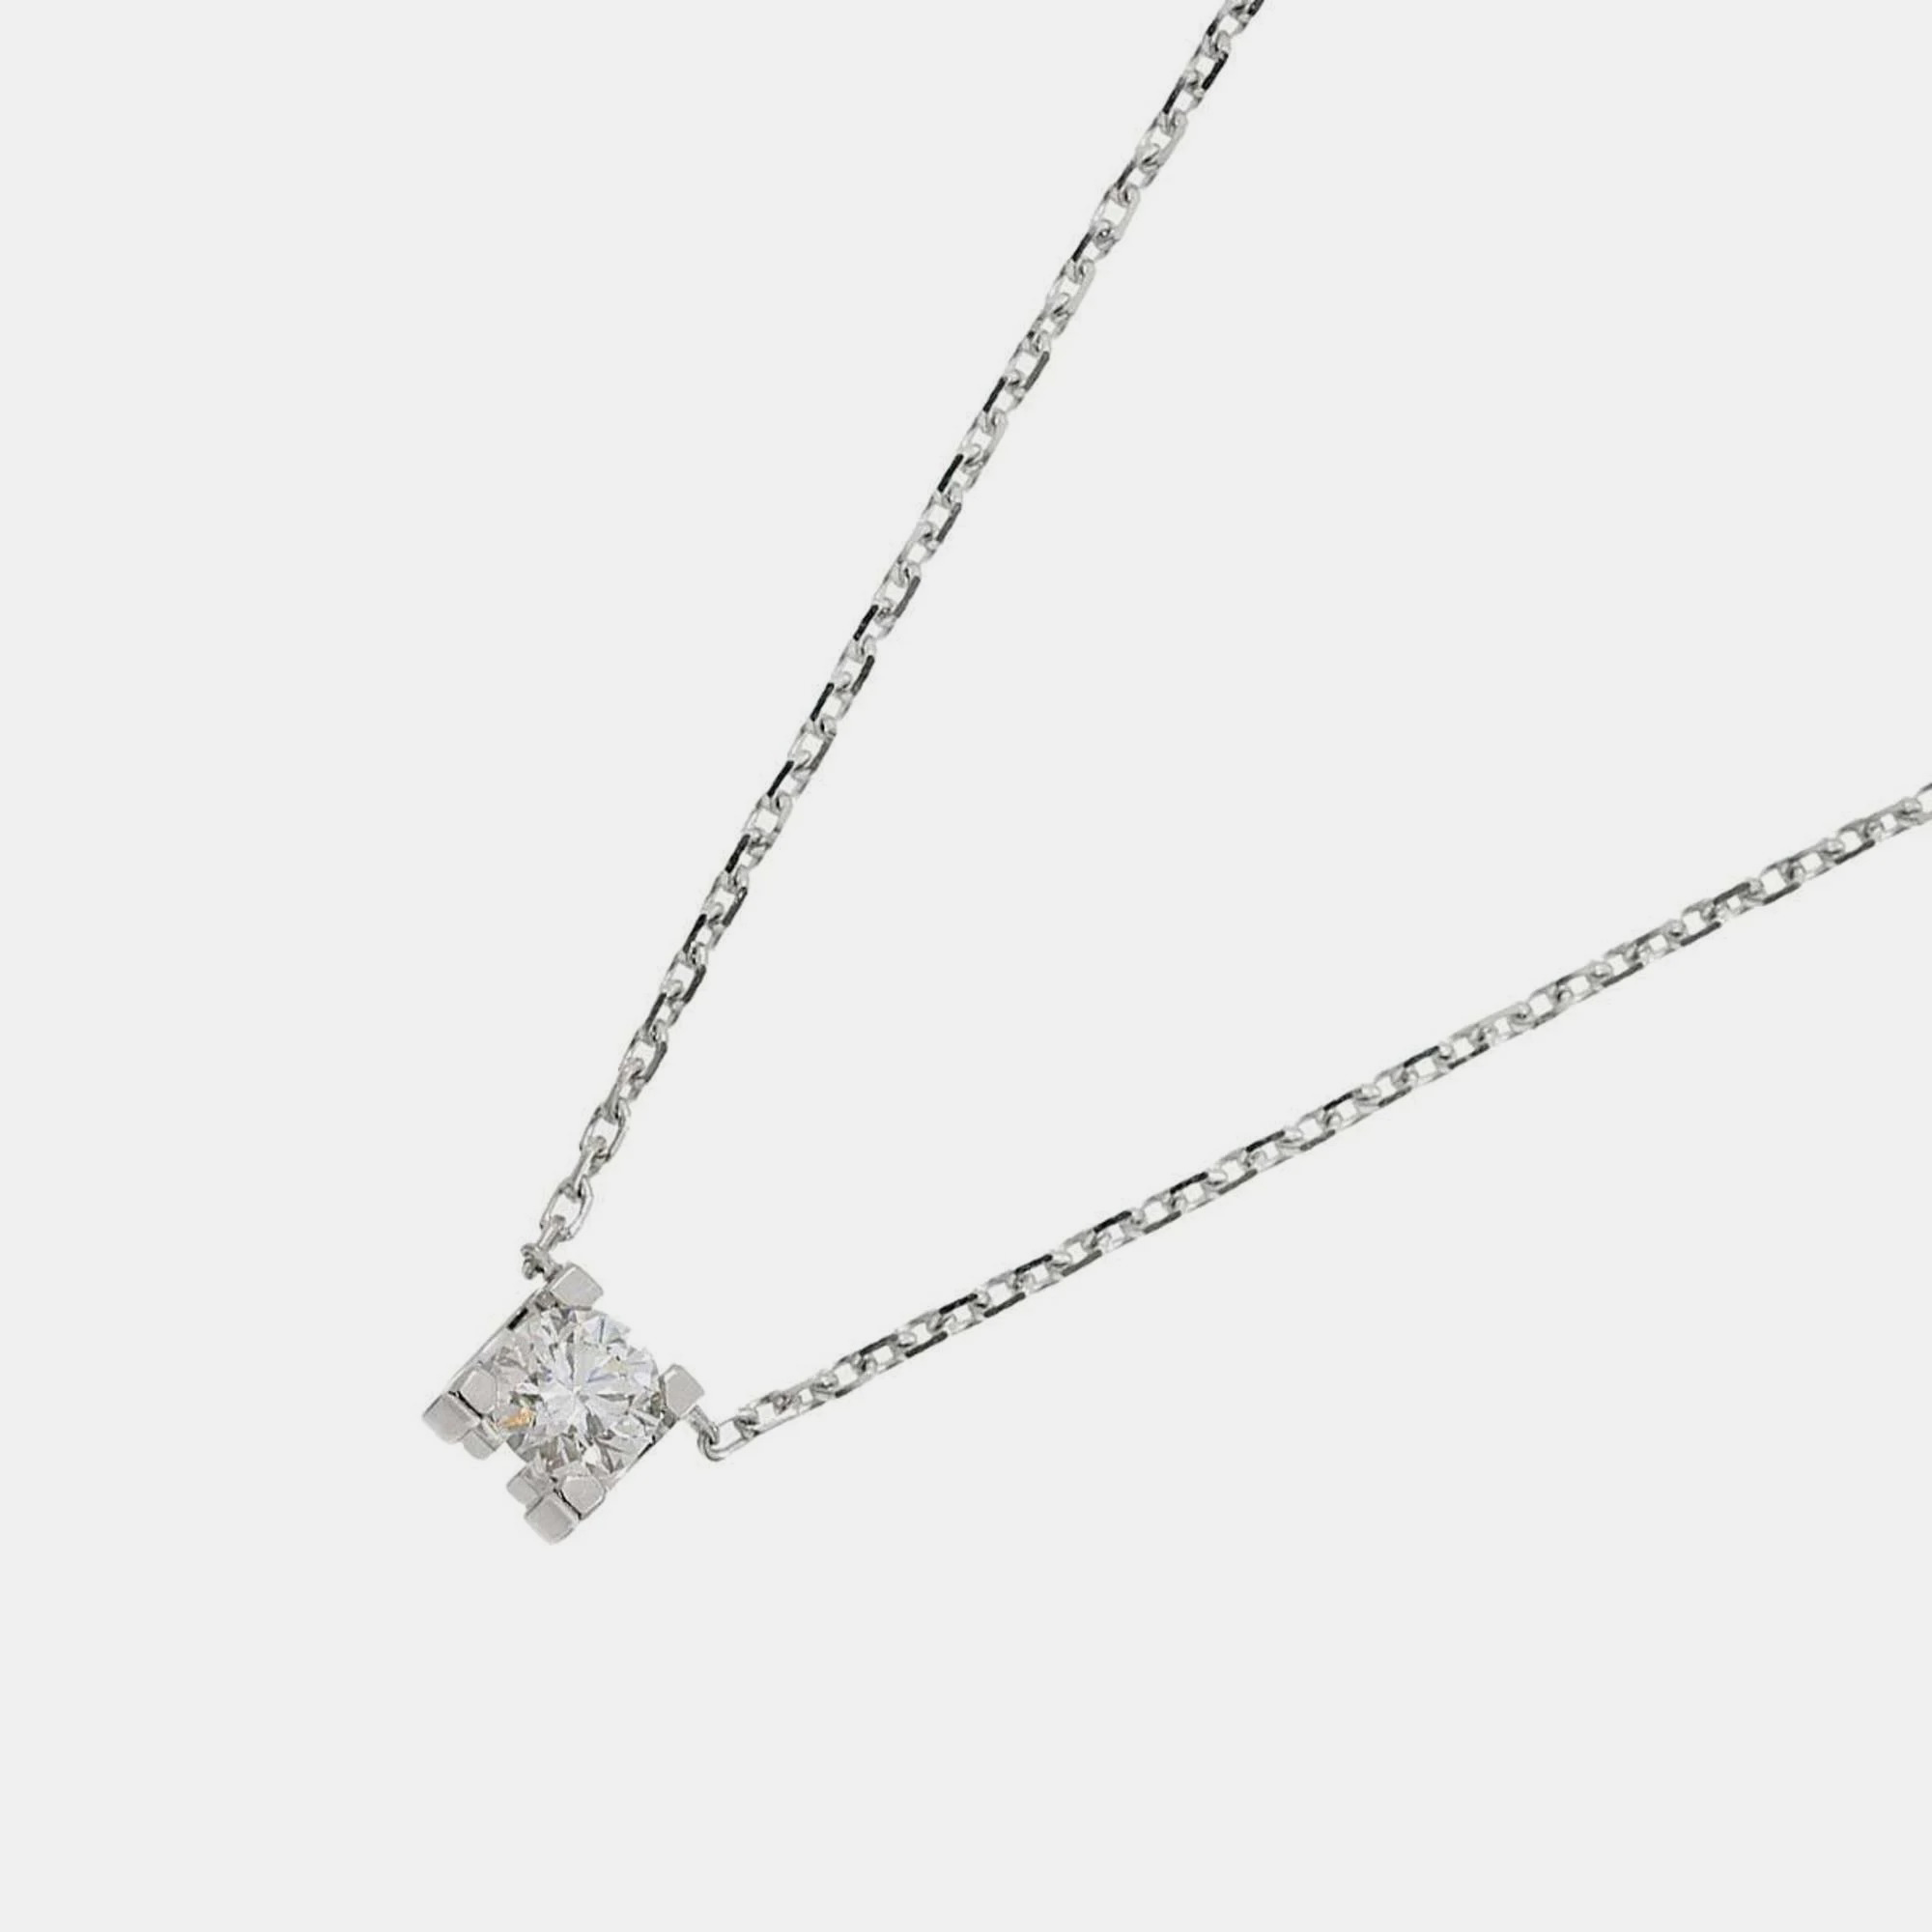 Cartier 18k white gold and diamond c de cartier pendant necklace